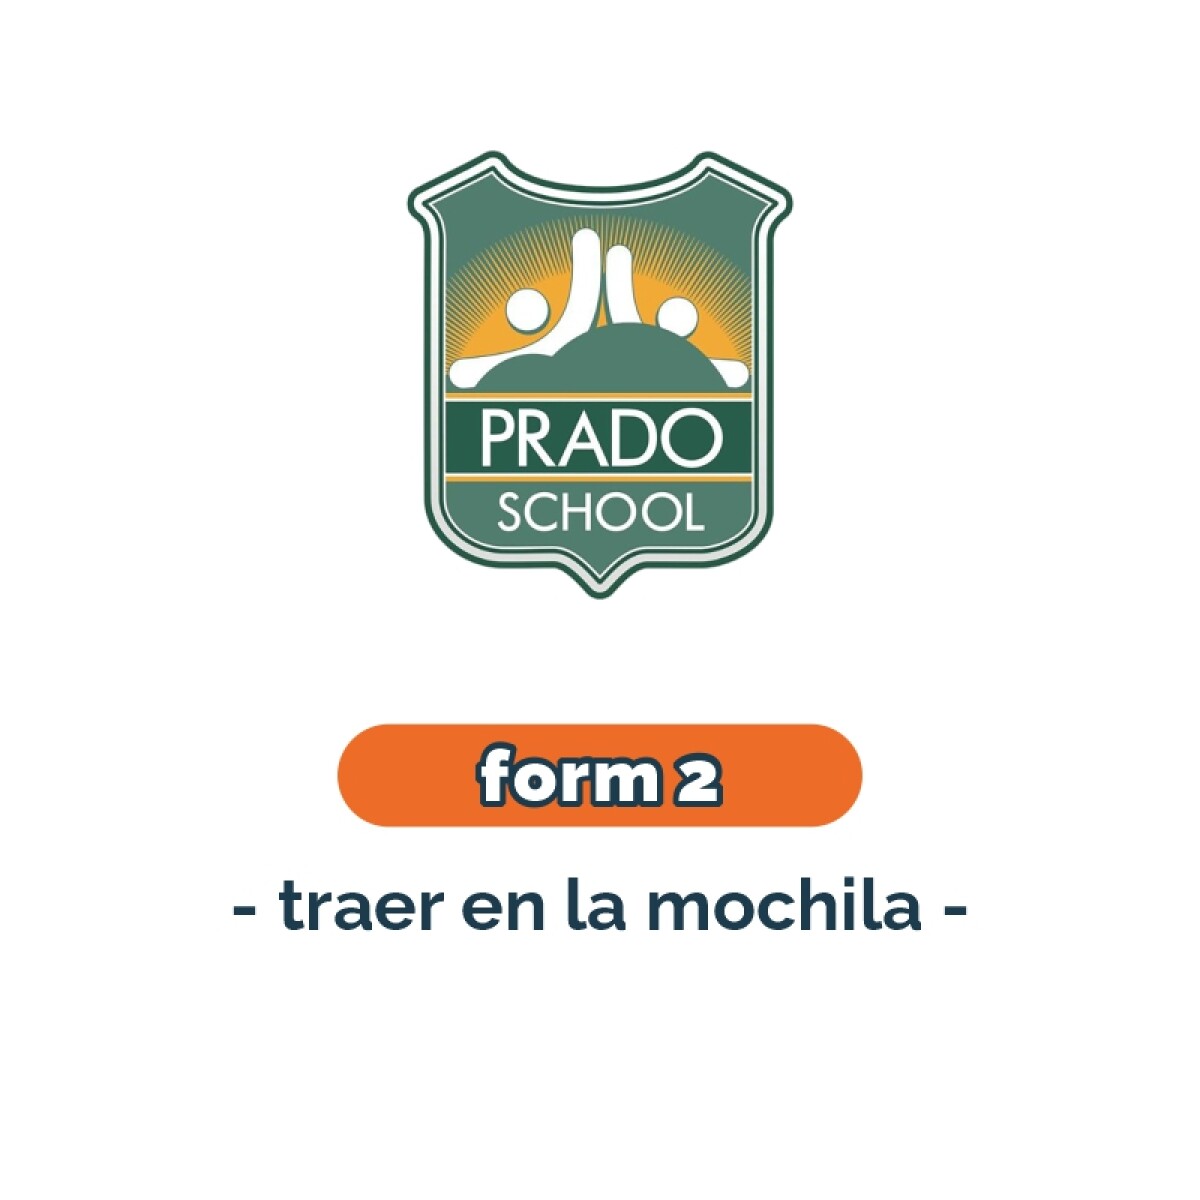 Lista de materiales - Primaria Form 2 Prado School 